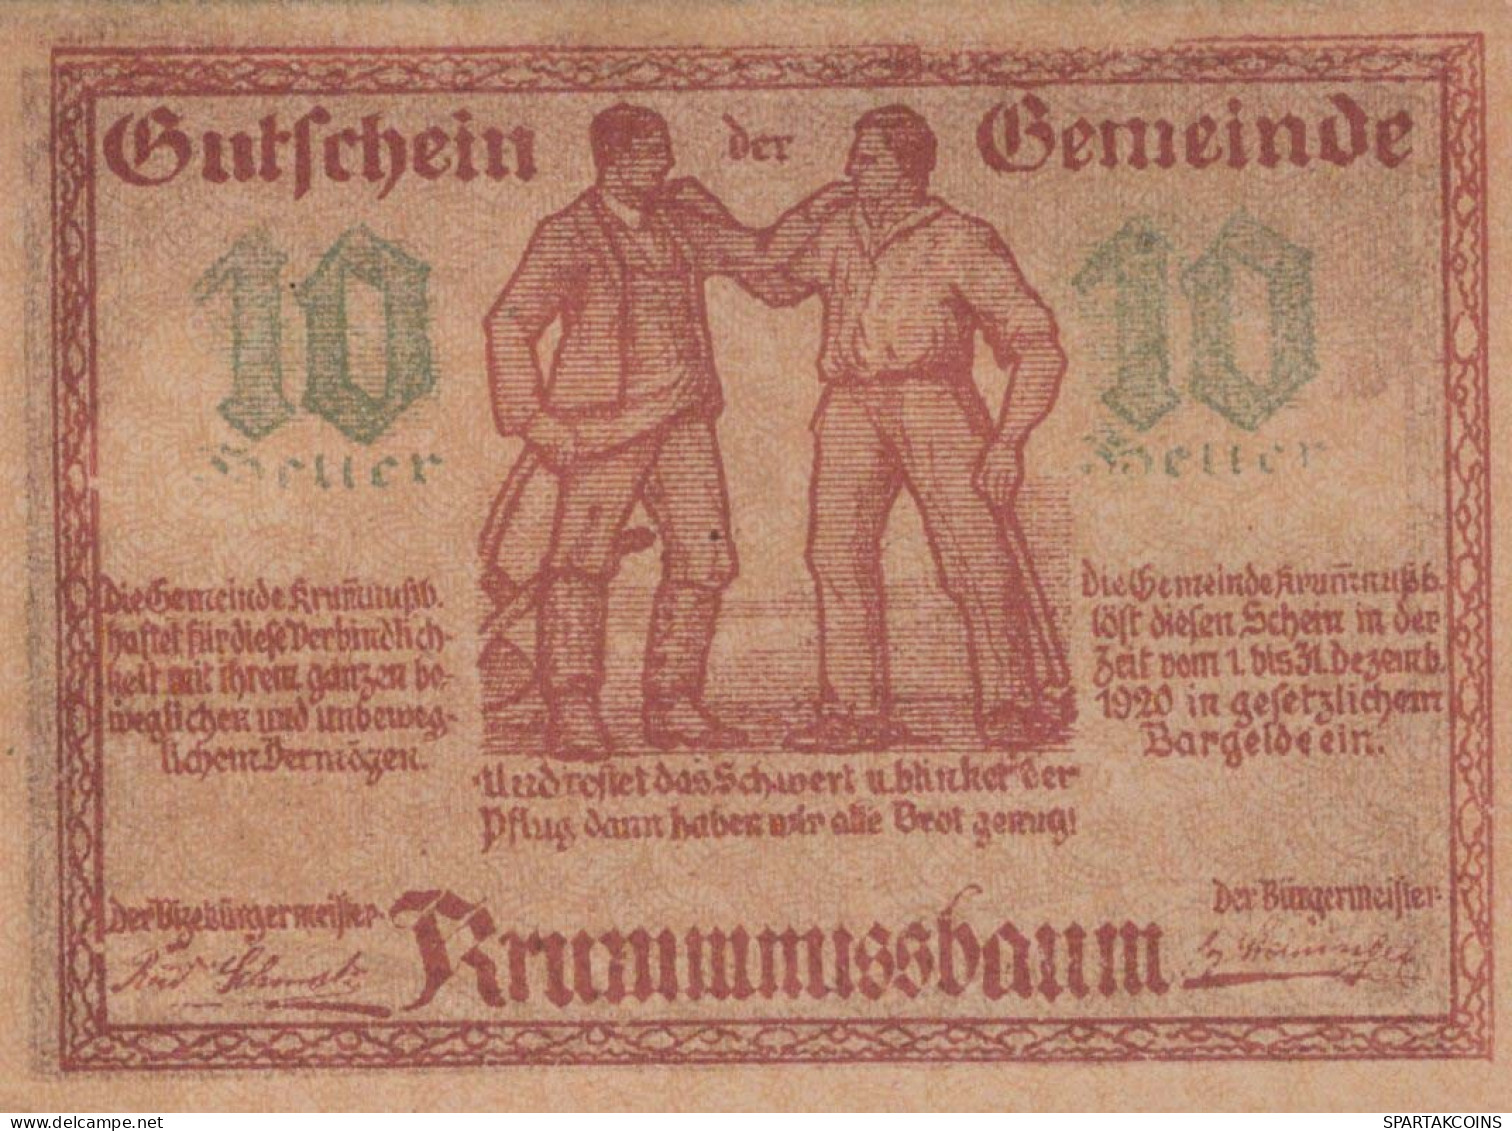 10 HELLER 1920 Stadt KRUMMNUSSBAUM Niedrigeren Österreich Notgeld Papiergeld Banknote #PG905 - [11] Local Banknote Issues